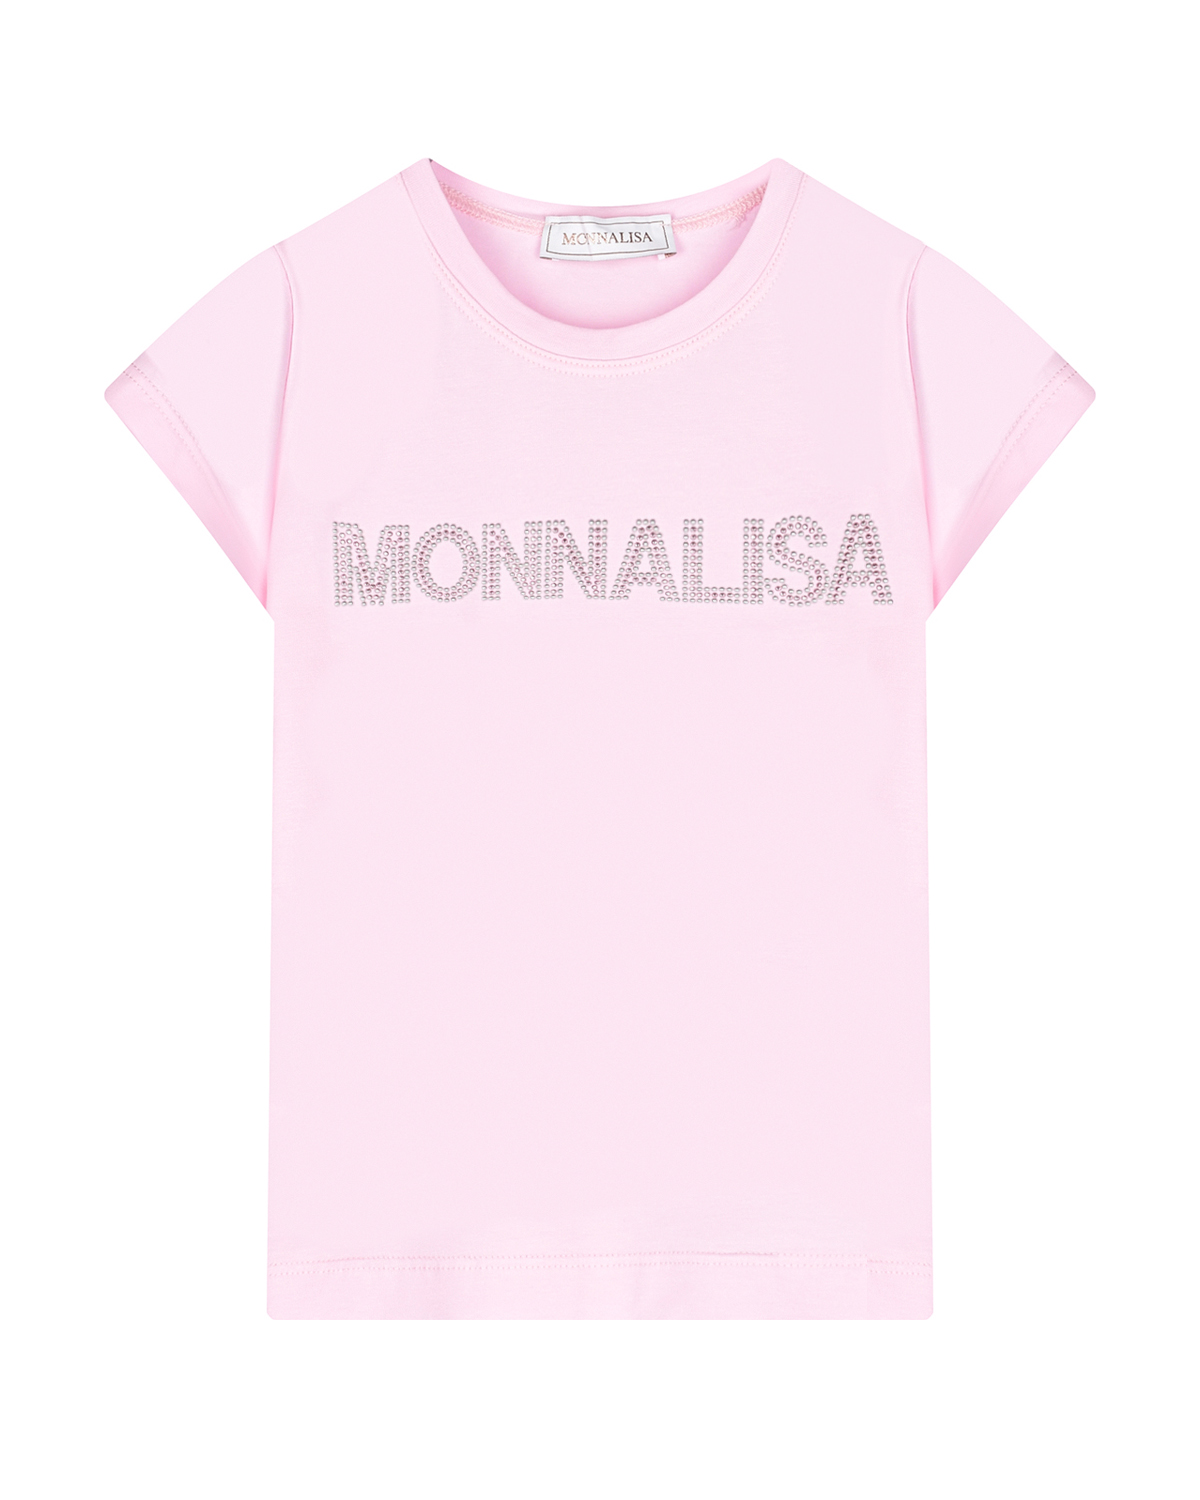 Розовая футболка с лого из стразов Monnalisa серая шапка с декором лама из стразов il trenino детская